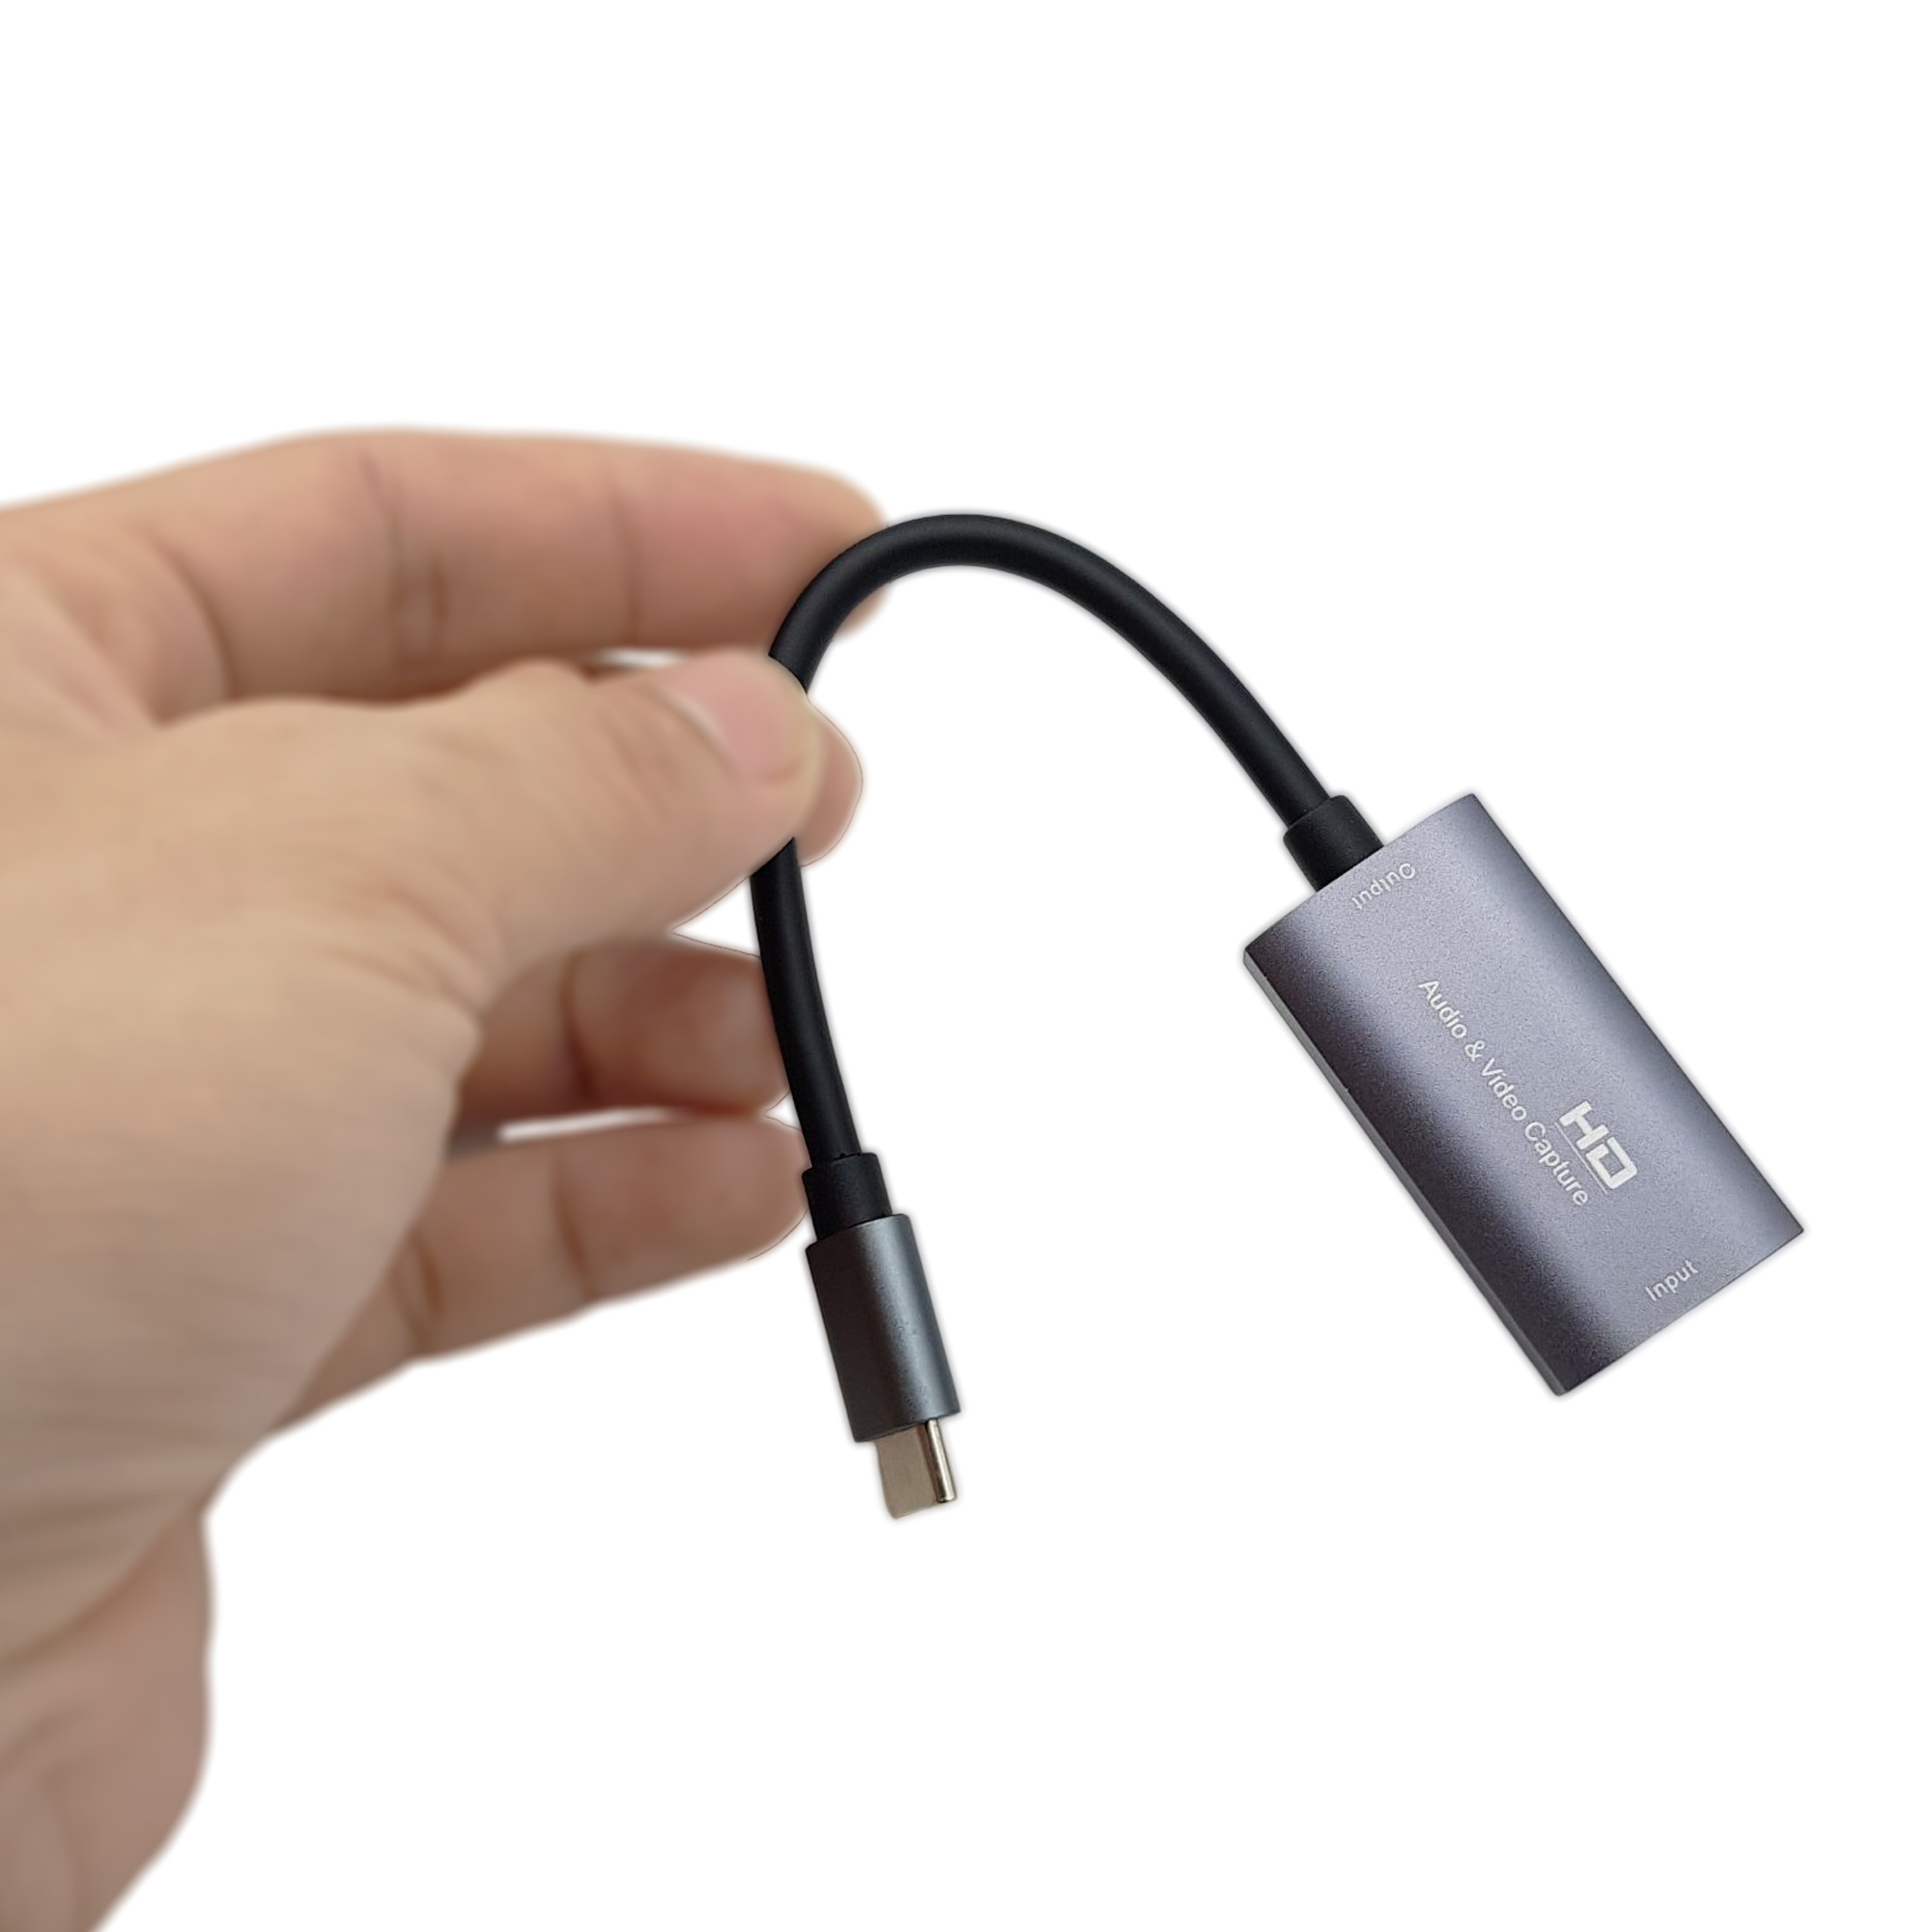 Cáp chuyển đổi cổng HMDI 4K sang đầu USB Type-C